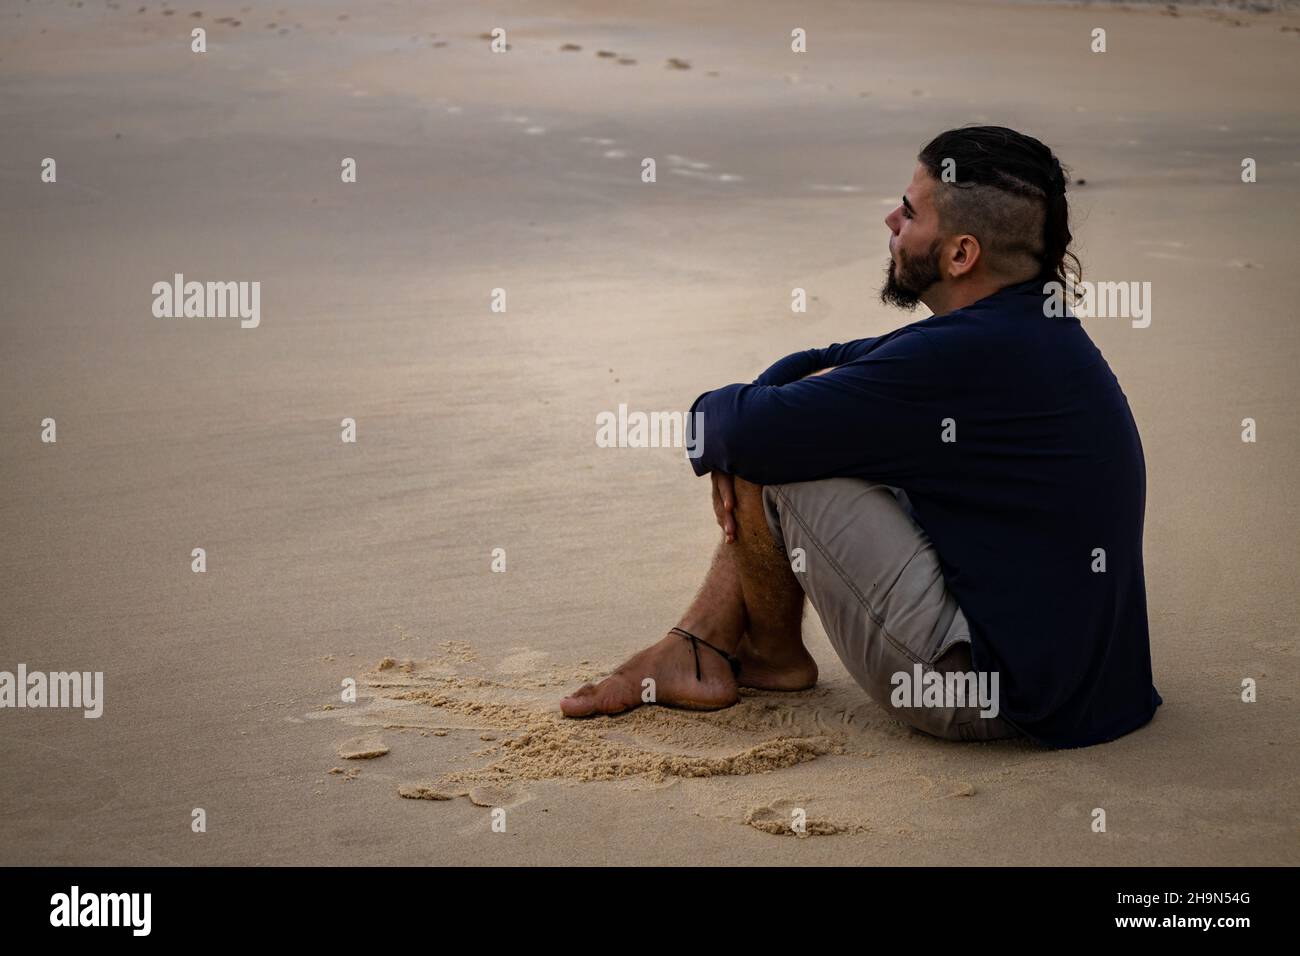 Hombre hispano de 25 a 30 años y aspecto hippie sentado en una playa con sus piernas cruzadas. Espacio libre para escribir. Concepto de depresión o lonelina Foto de stock